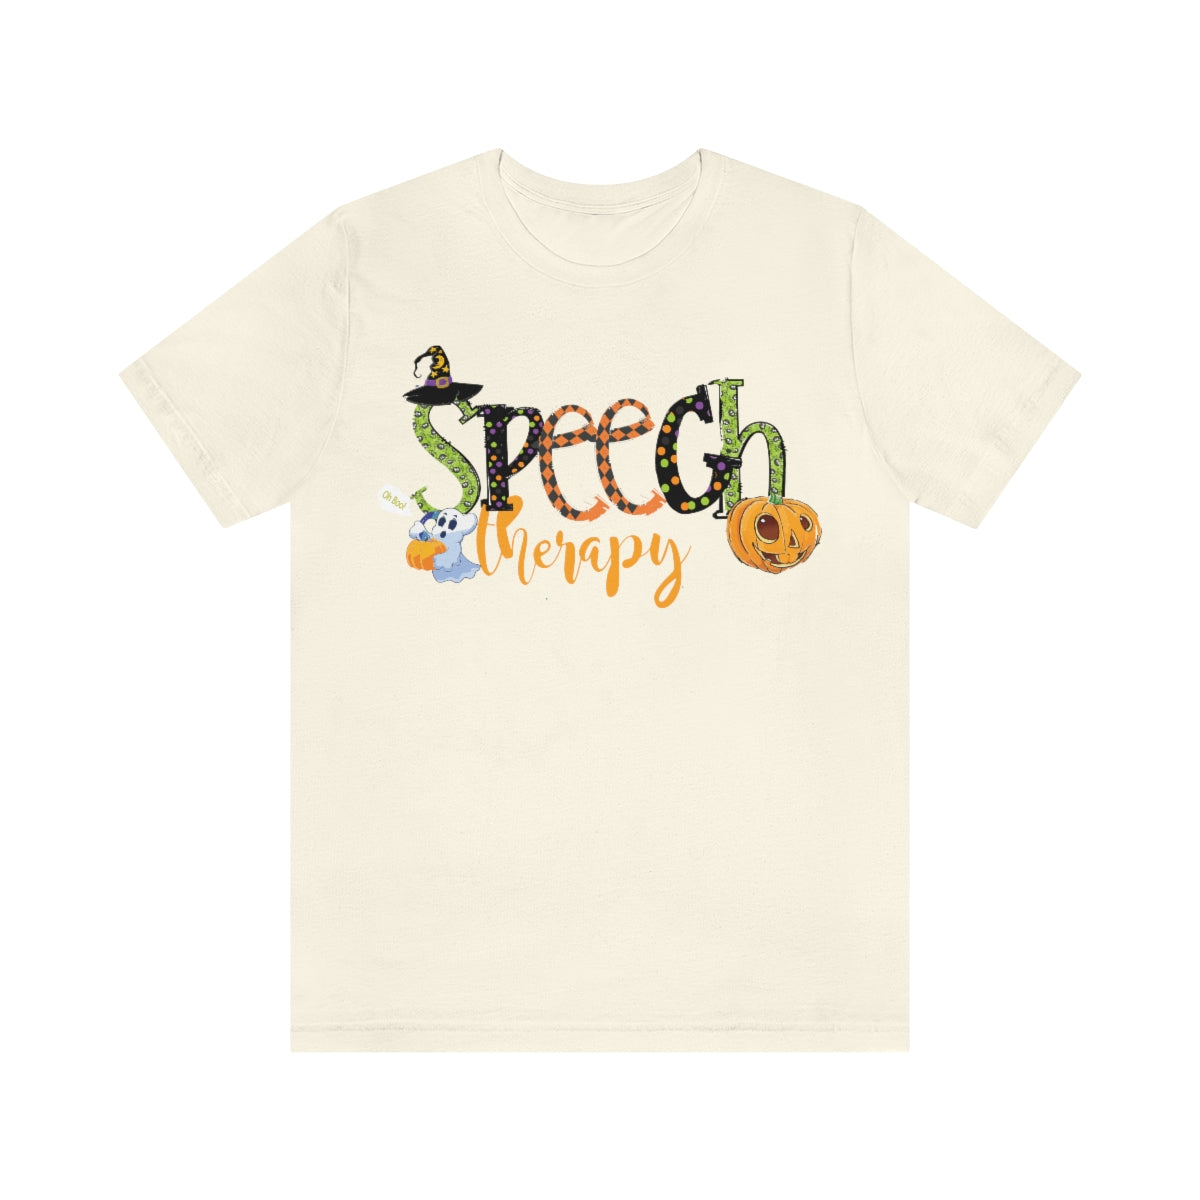 Speech Therapy Halloween Shirt, SLP Halloween Shirt, Speech Therapist Halloween, Spooky SLP, AAC Shirt, Speech Pathologist Shirt, Fall